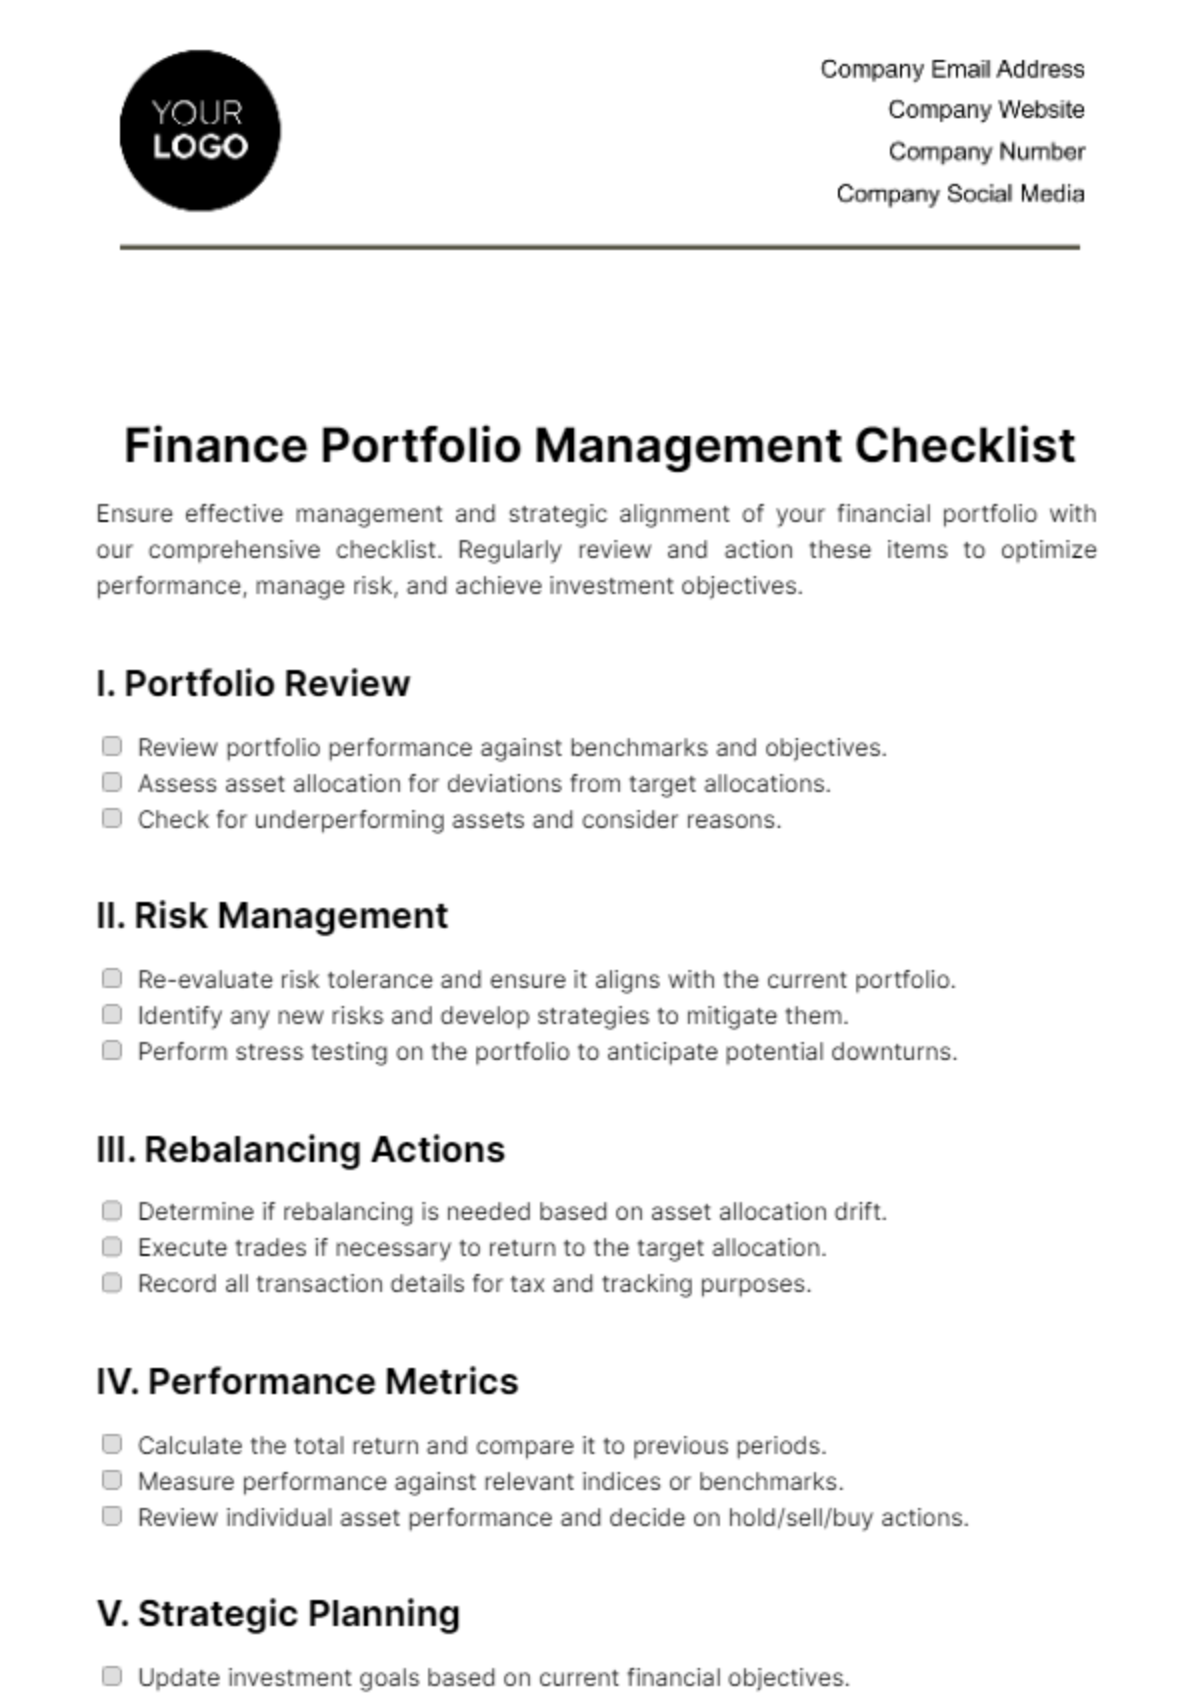 Finance Portfolio Management Checklist Template